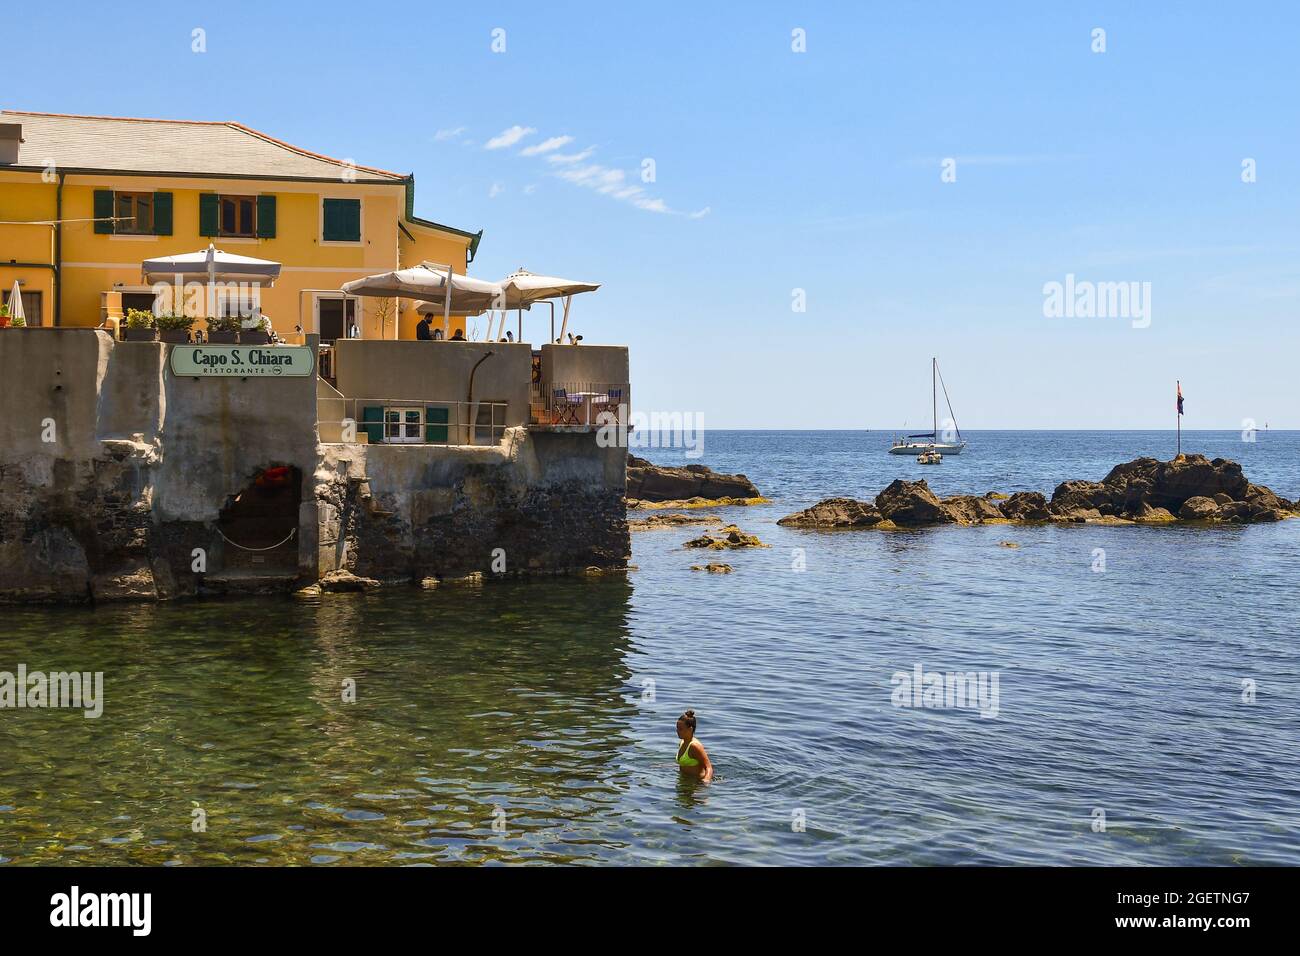 Eine Frau erfrischt sich an der Küste des kleinen Fischerdorfes, während Touristen auf der Terrasse eines Restaurants, Boccadasse, Genua, Italien, speisen Stockfoto